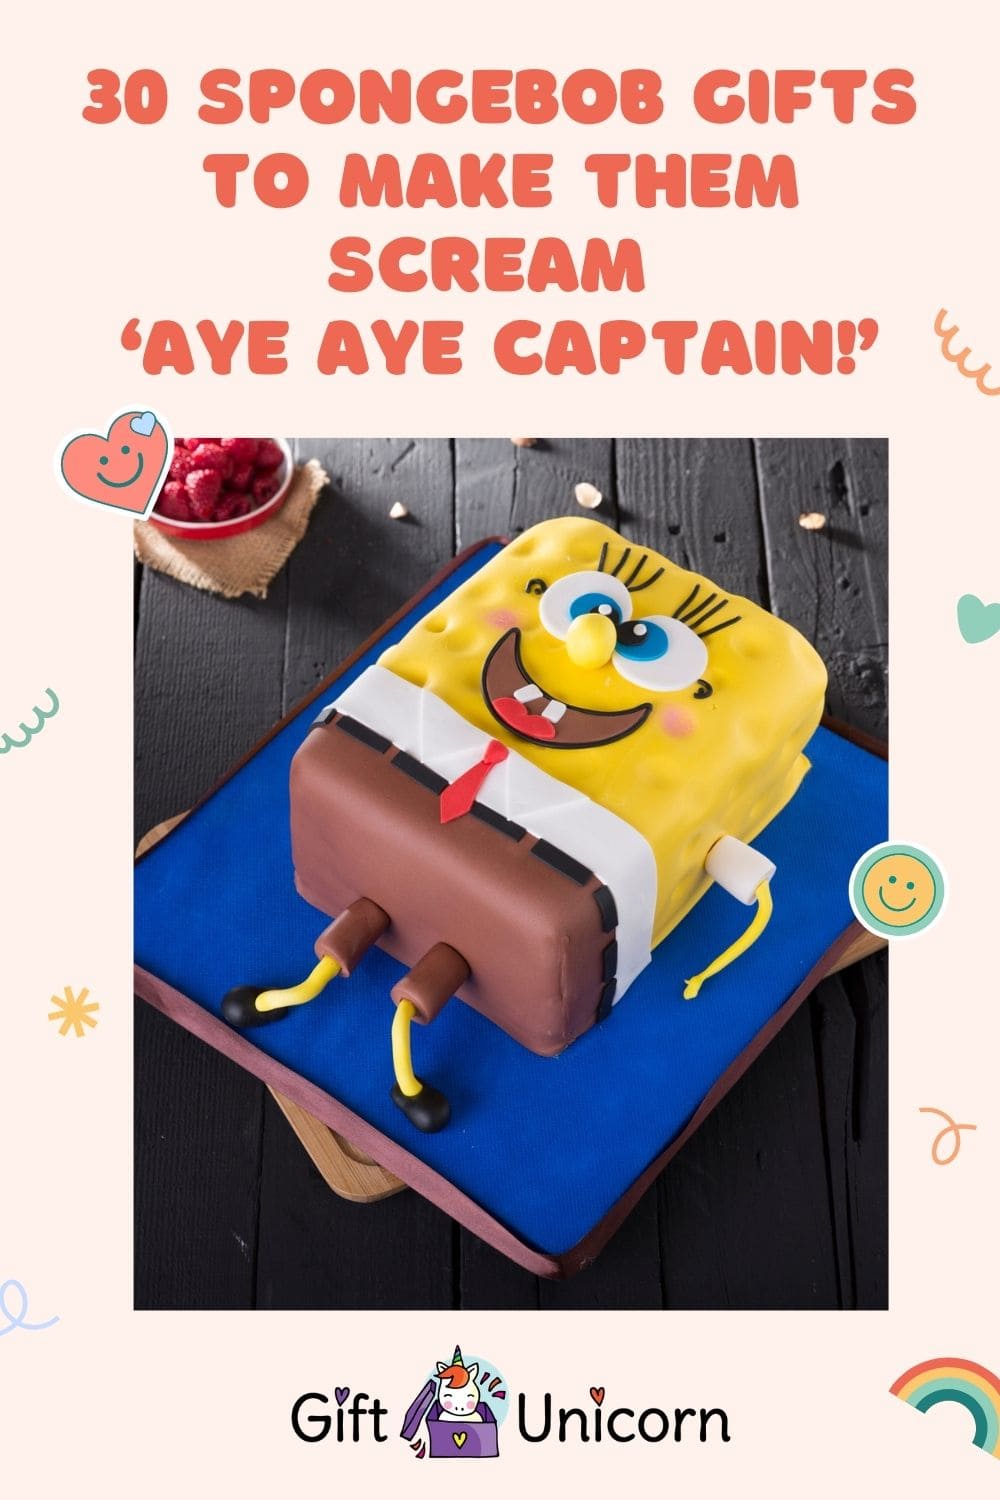 30 Spongebob Gifts To Make Them Say ‘Aye Aye Captain!’ - pinterest pin image